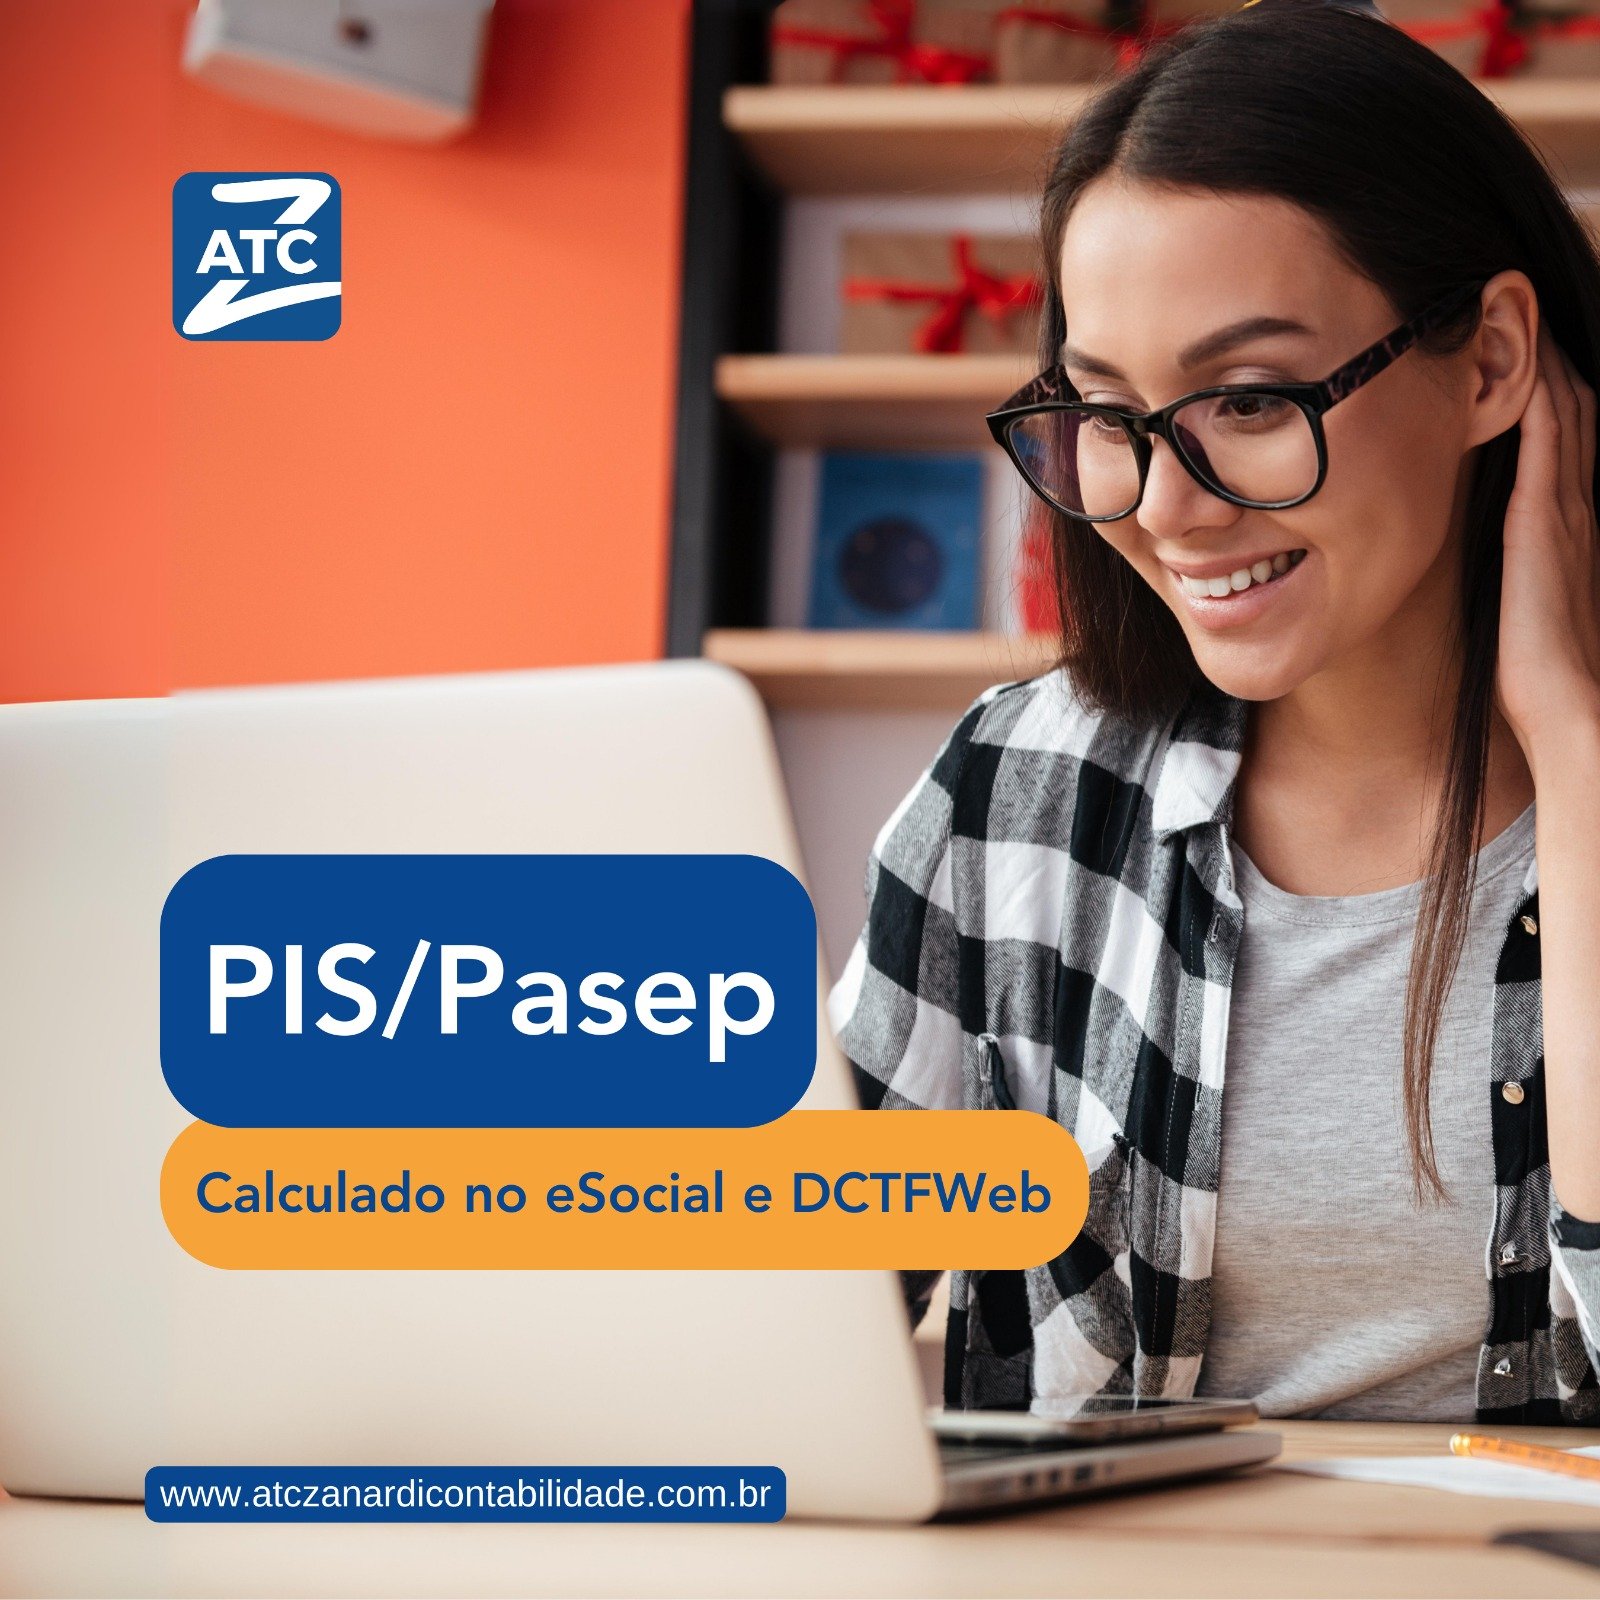 PIS/Pasep serão calculados no eSocial e DCTFWeb